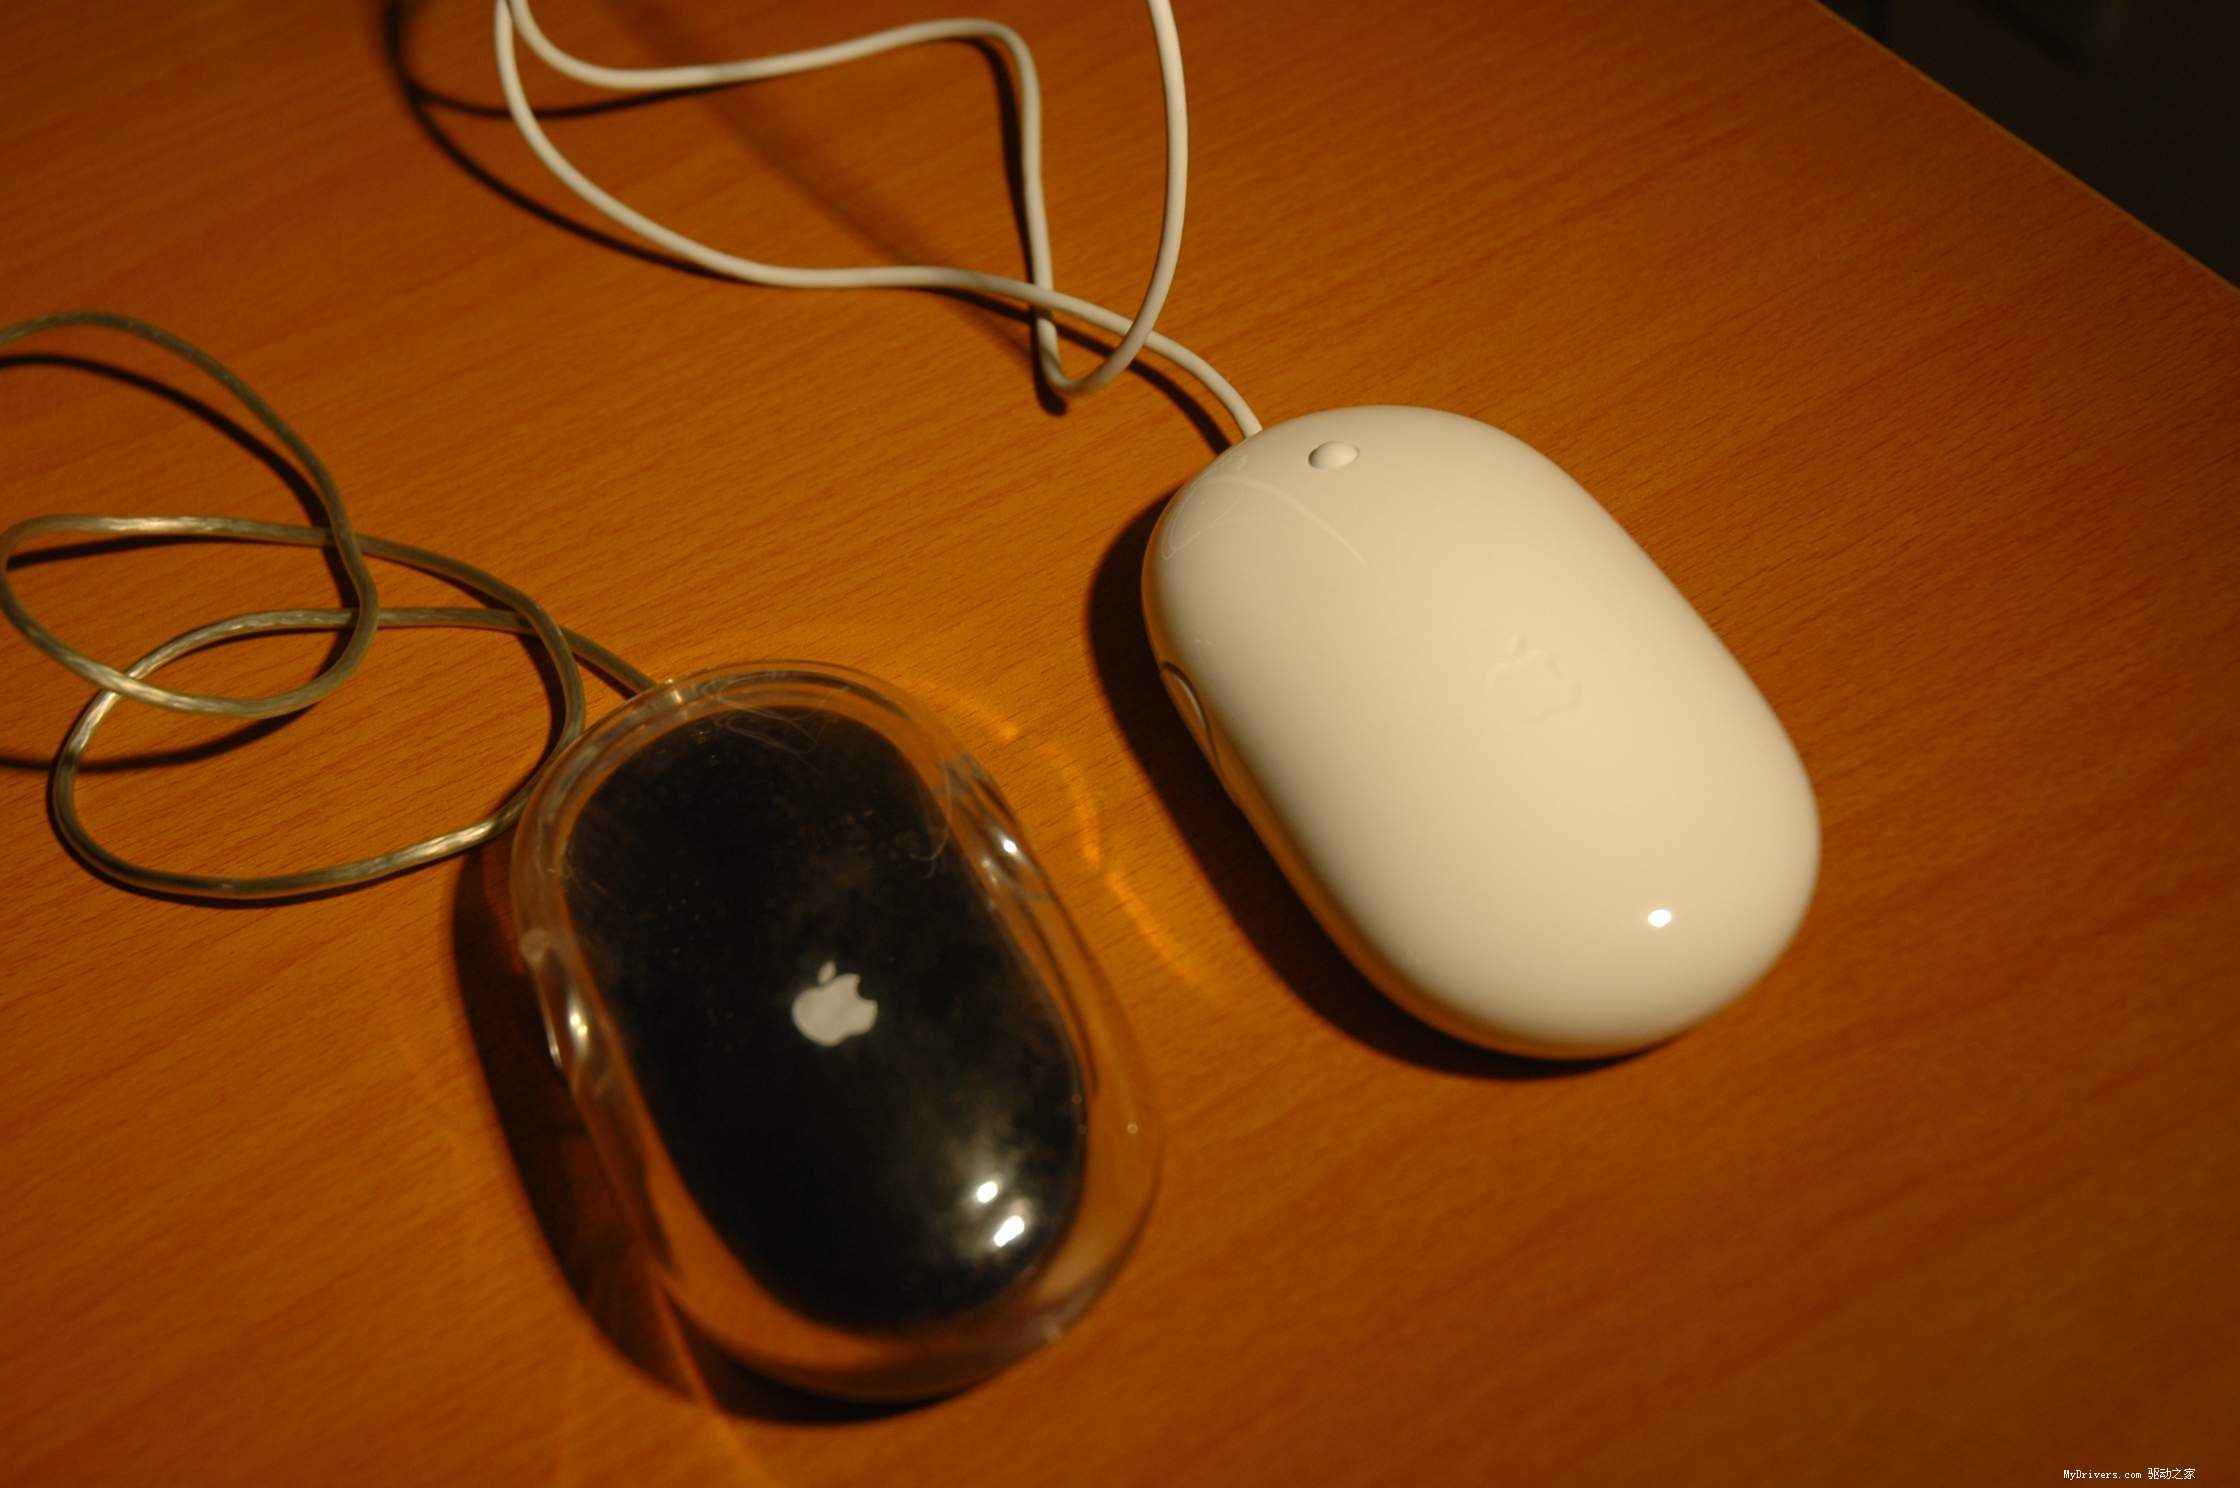 我的右手滑动这款新鼠标来完成,这是我未曾料想到的,难怪苹果官方的